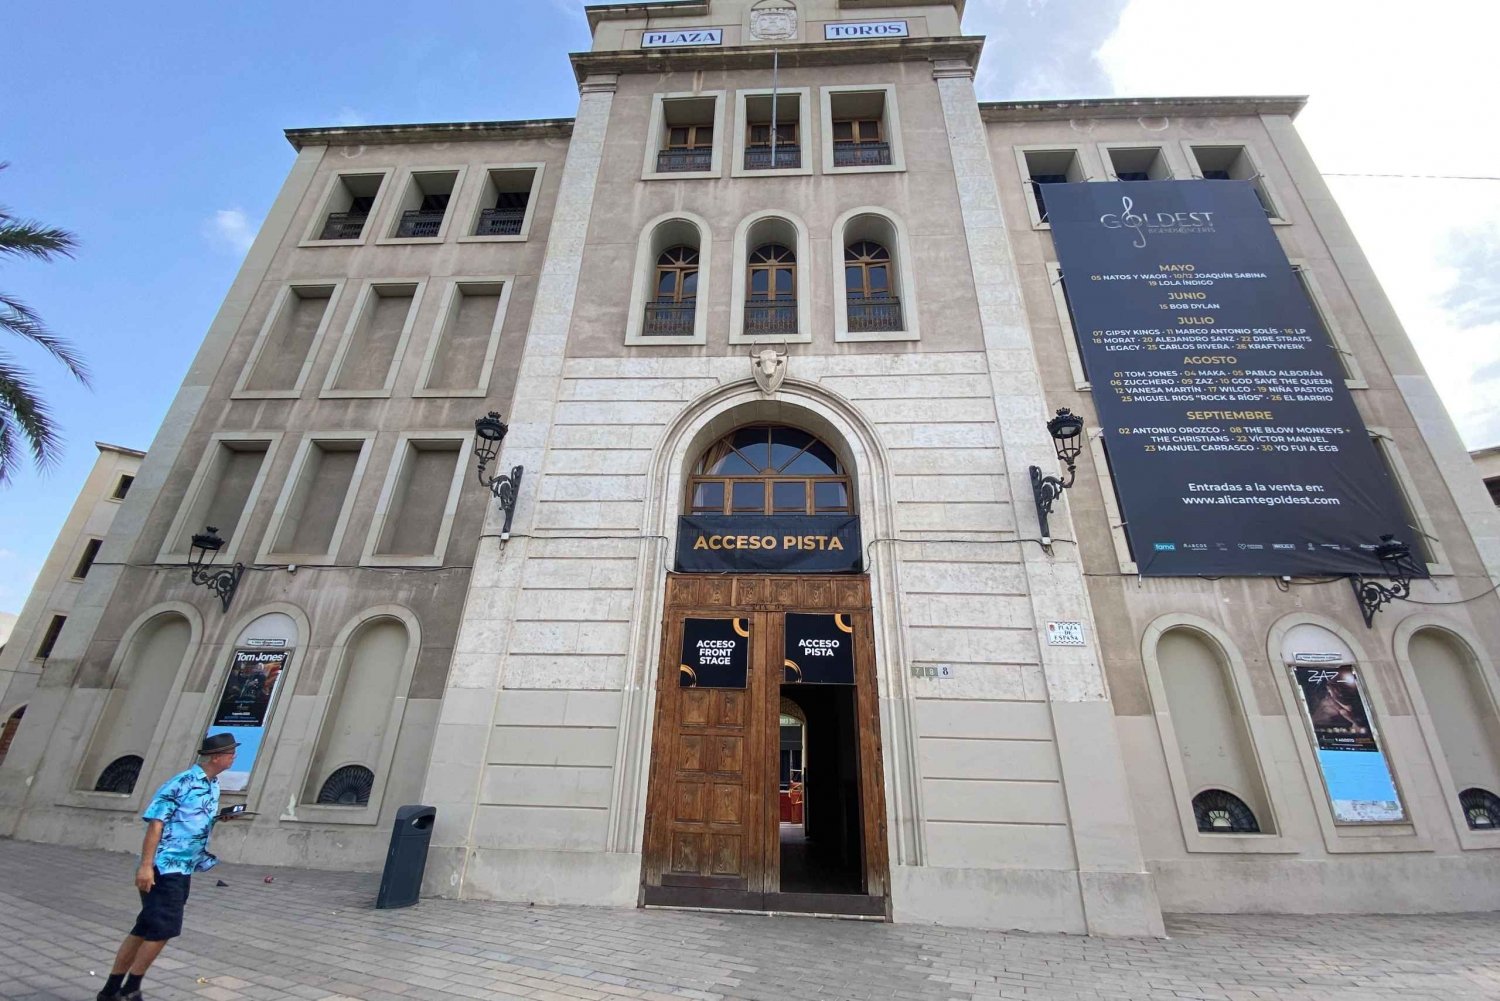 Alicante: Besök på tjurfäktningsarenan och museet med Audioguide